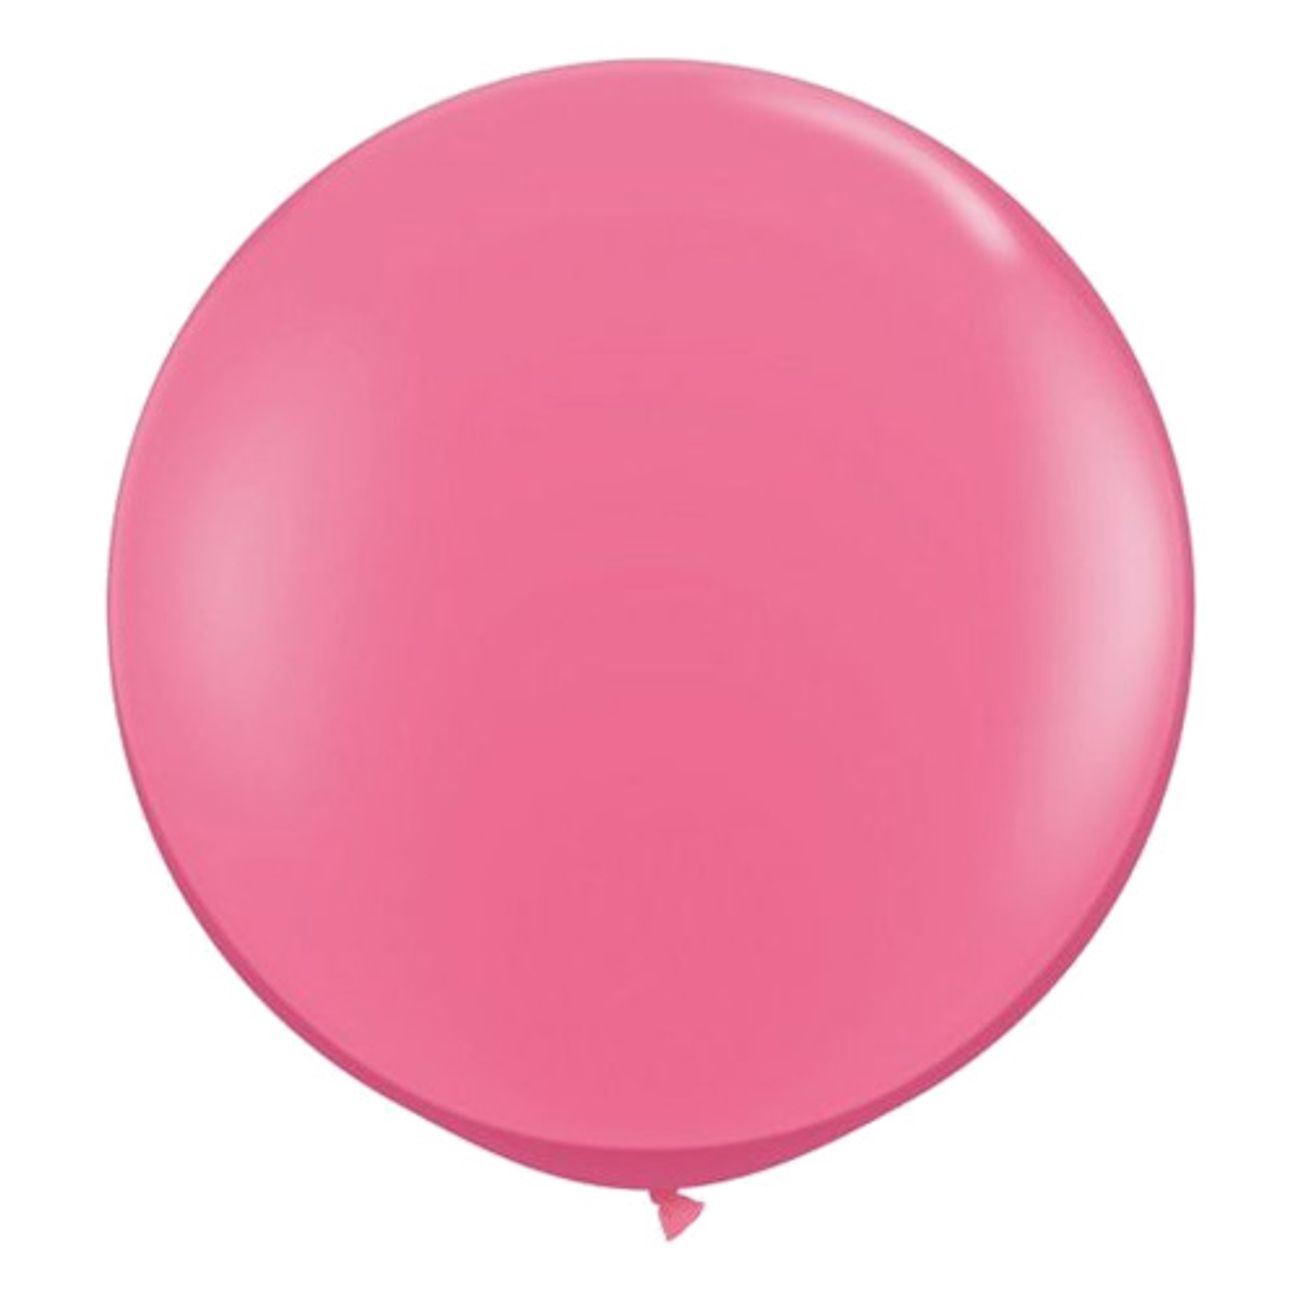 jatteballong-rosa-1